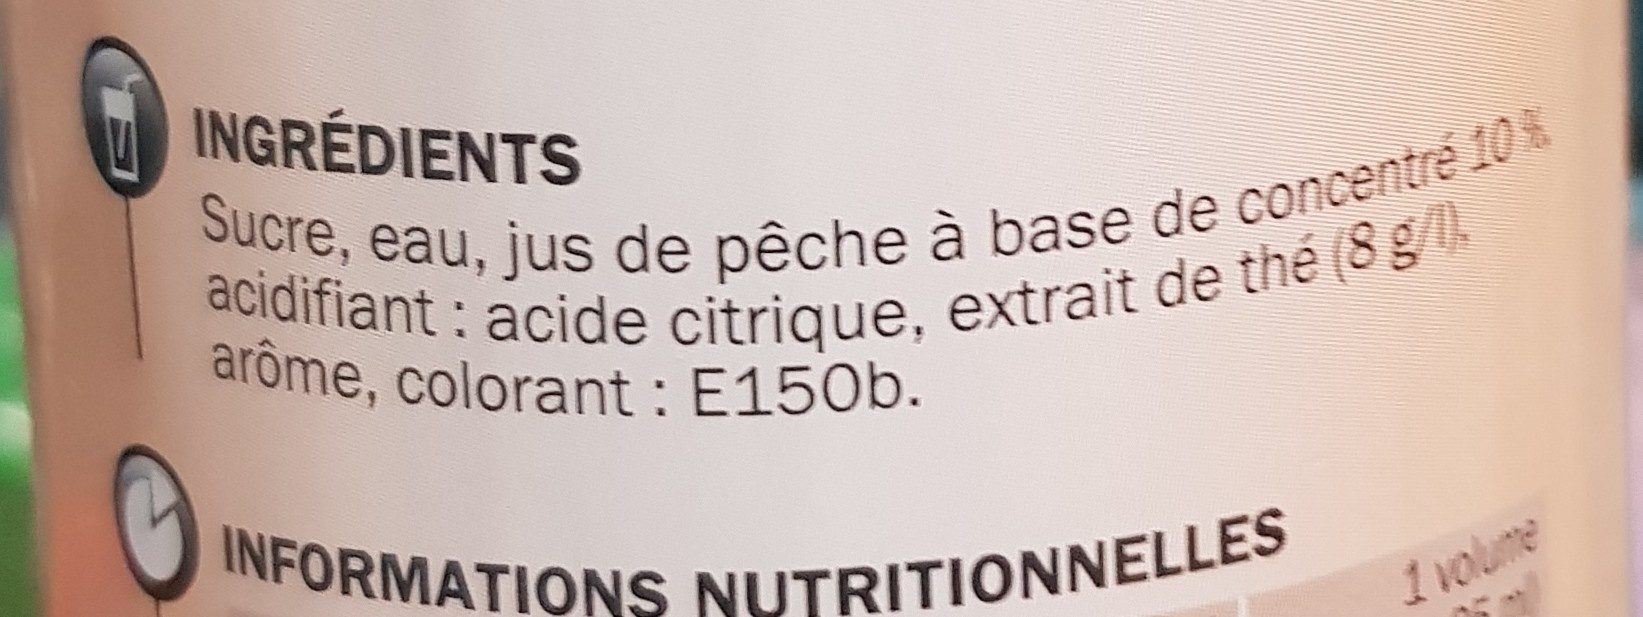 Sirop Thé Pêche - Ingredients - fr